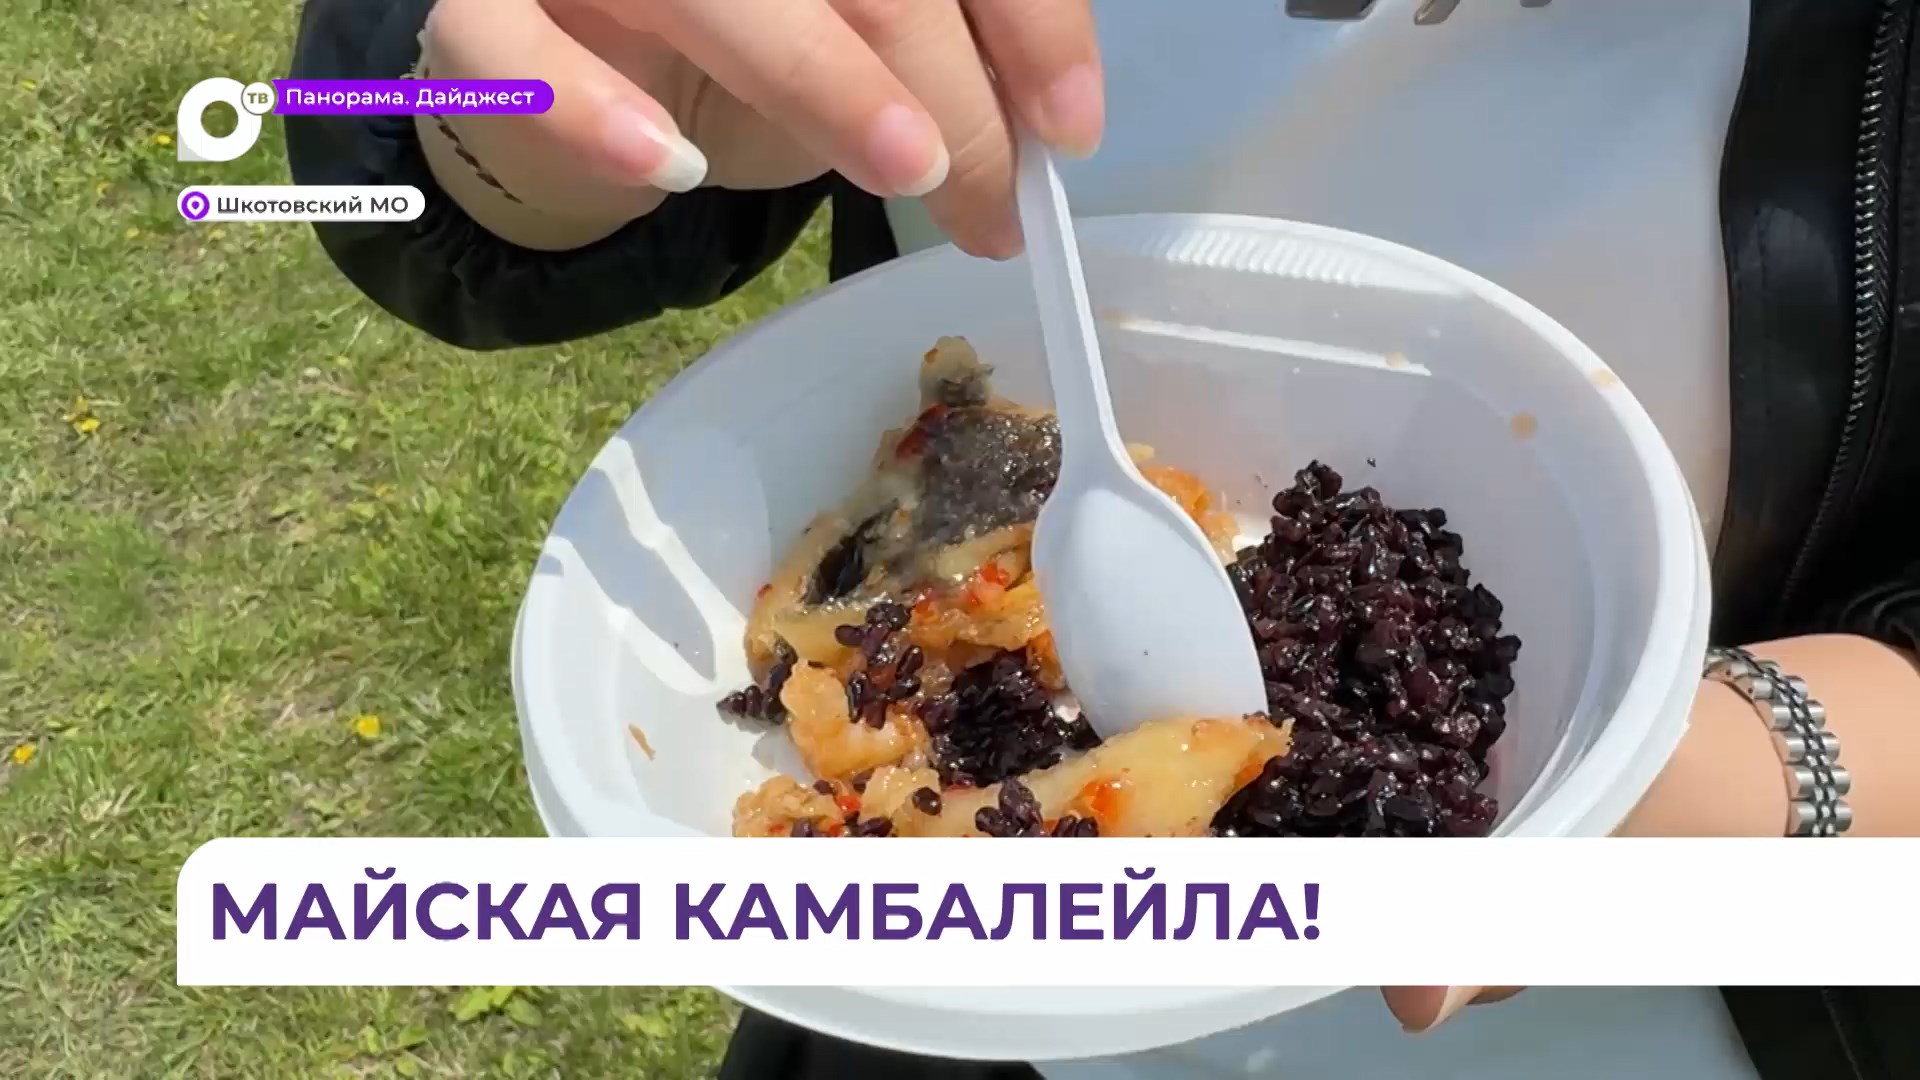 Фестиваль «Камбалейла» в четвертый раз состоялся в Шкотовском округе